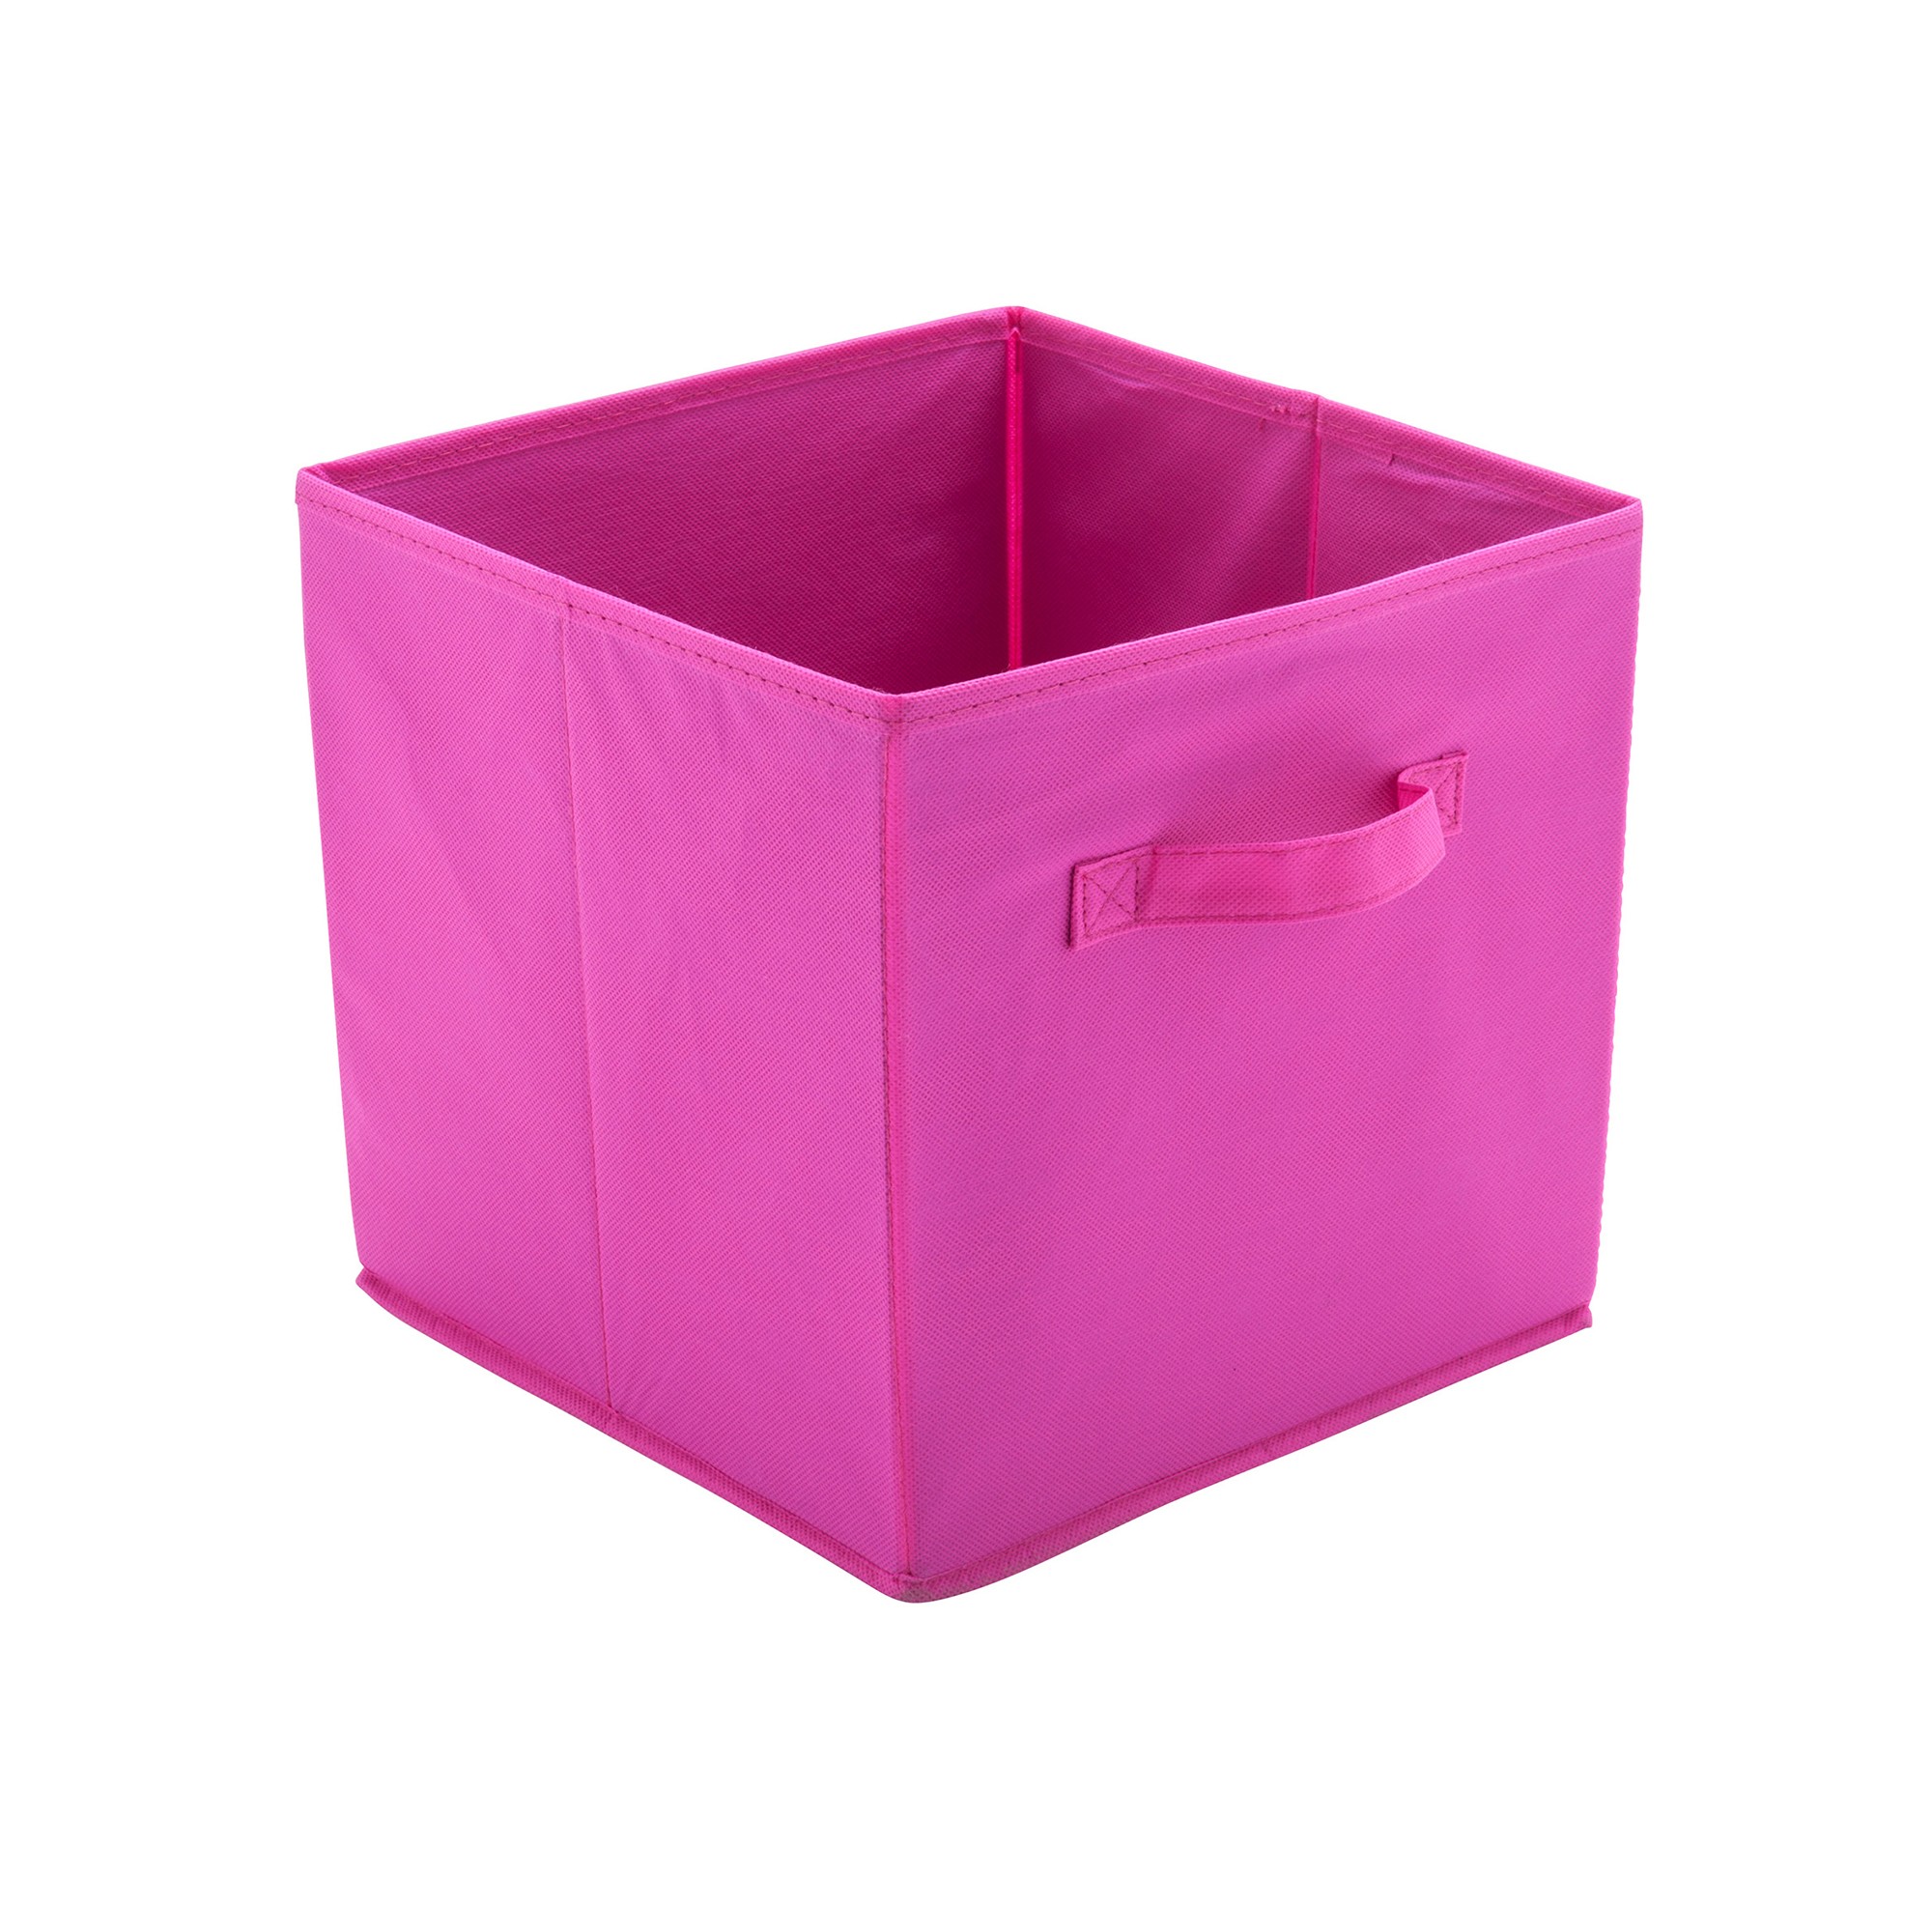 Cube de rangement 'Petits Pois' rose - 30x30 [A1796]